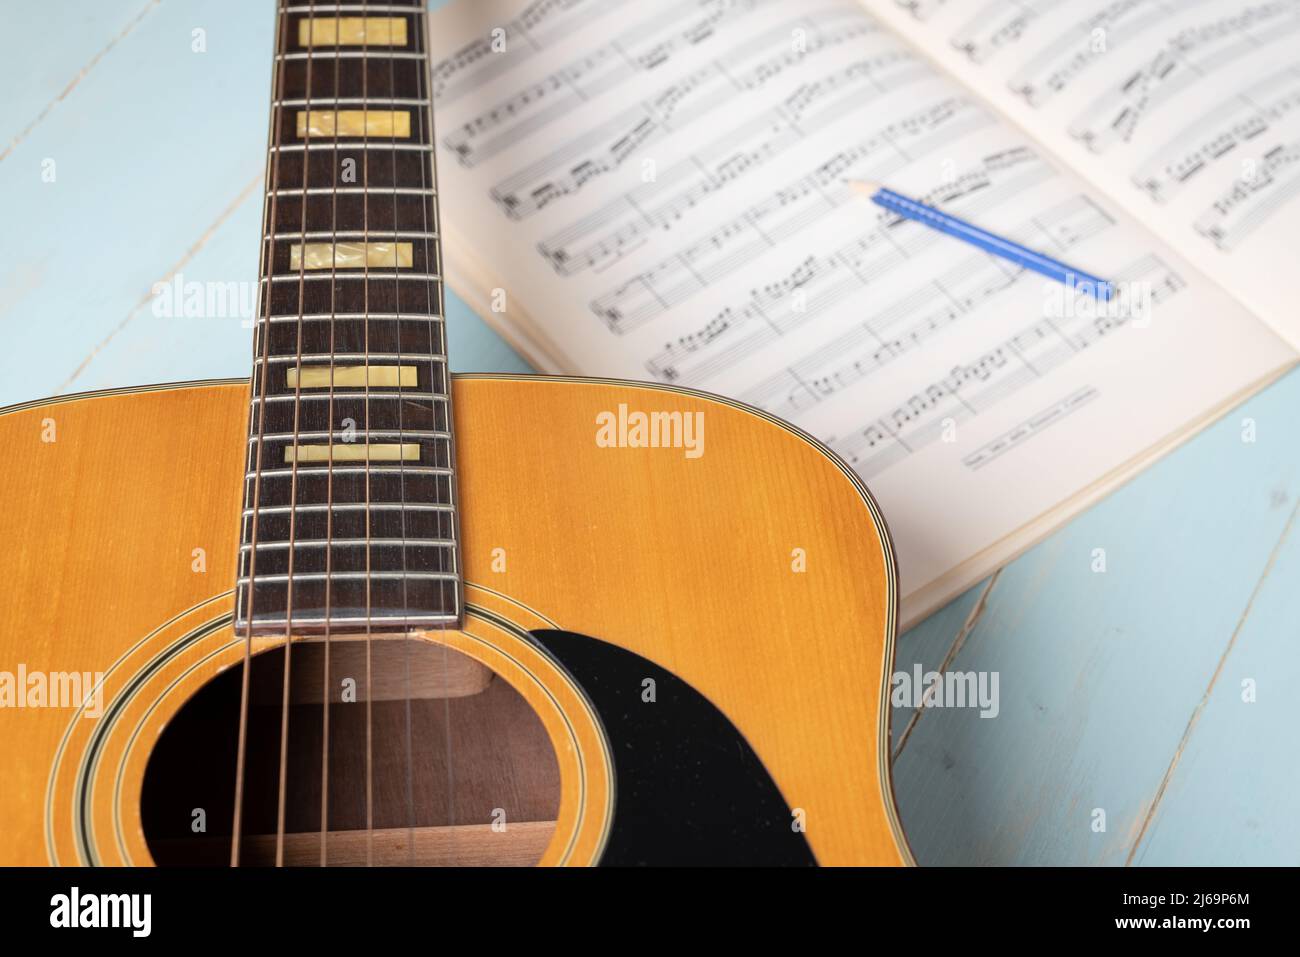 Musikaufnahme-Szene mit Gitarre, Notenblatt und Bleistift auf Holztisch, Nahaufnahme Stockfoto